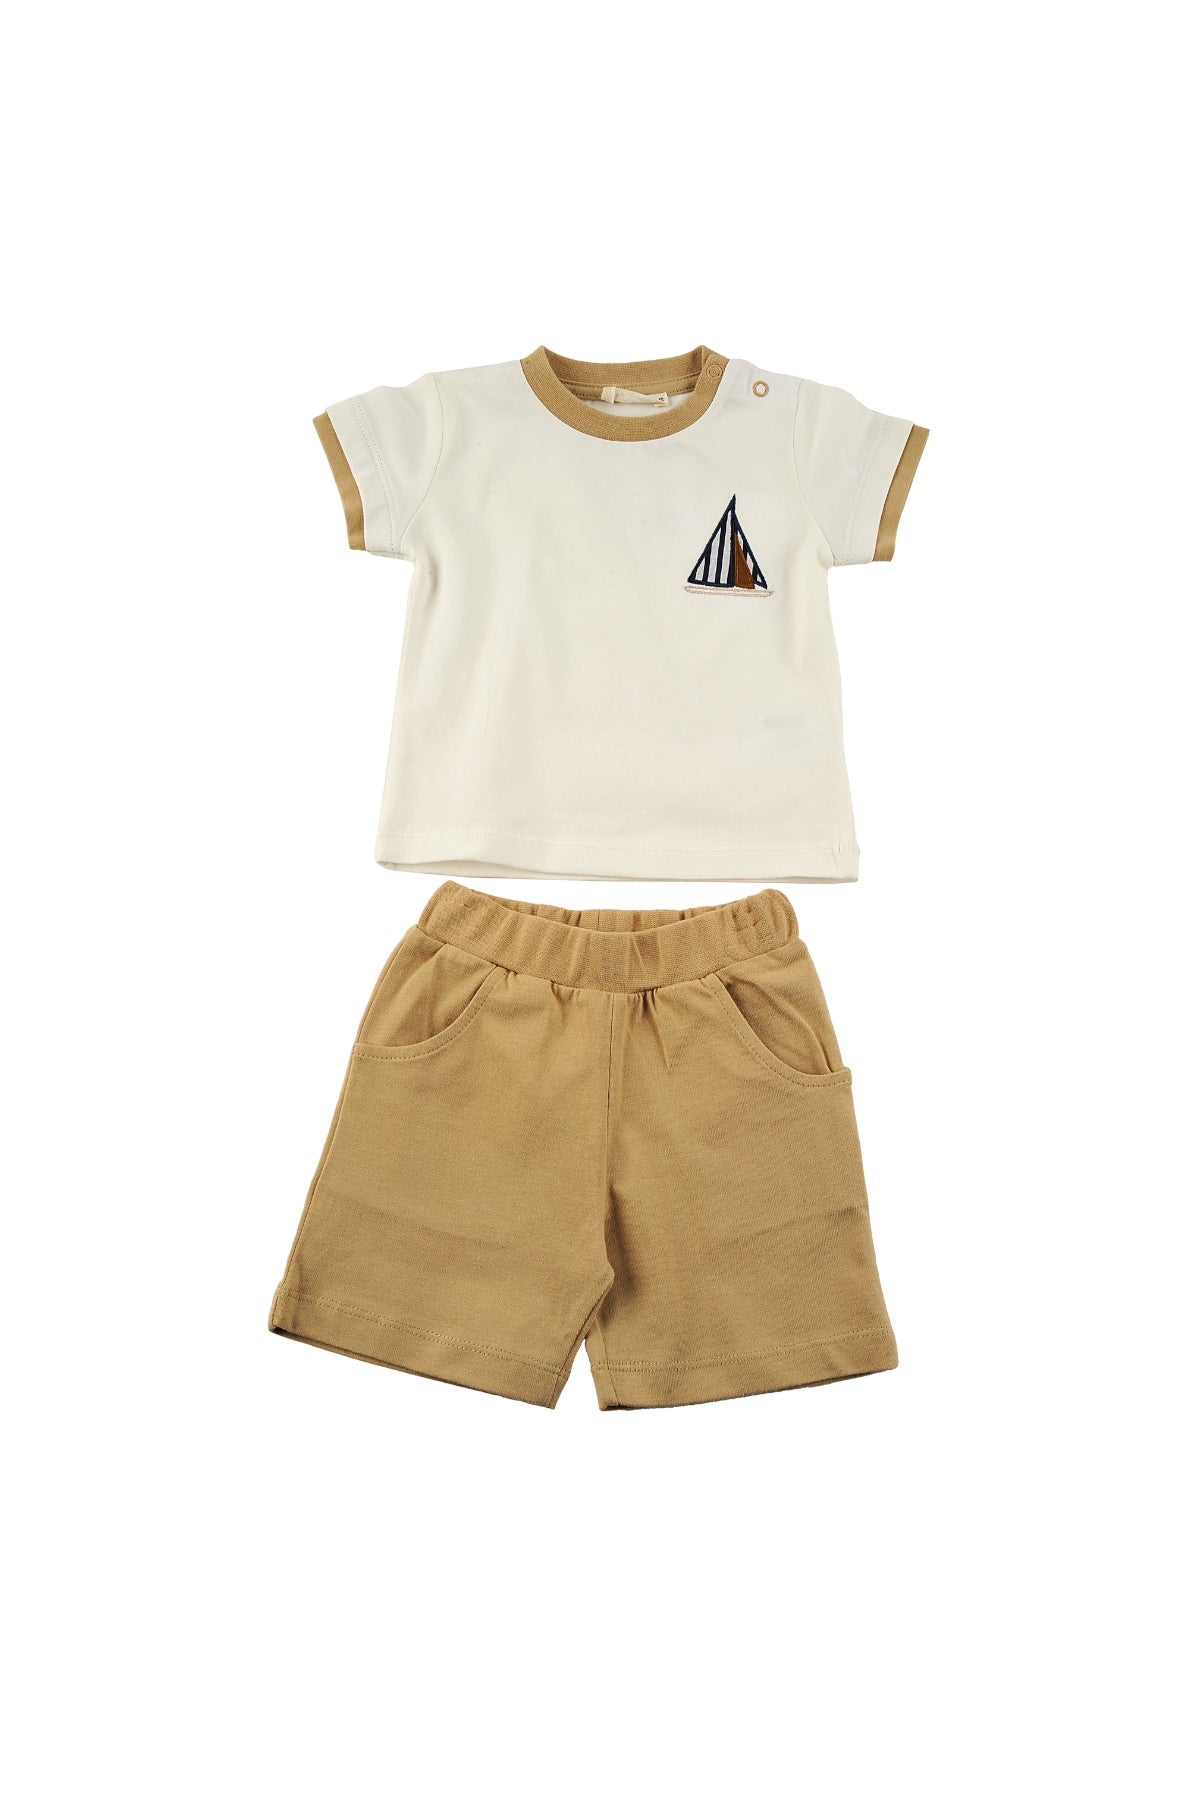 Erkek Bebek Ekru Yelken Desenli Çıtçıtlı T-Shirt ve Cepli Şort Takım (6ay-4yaş)-2